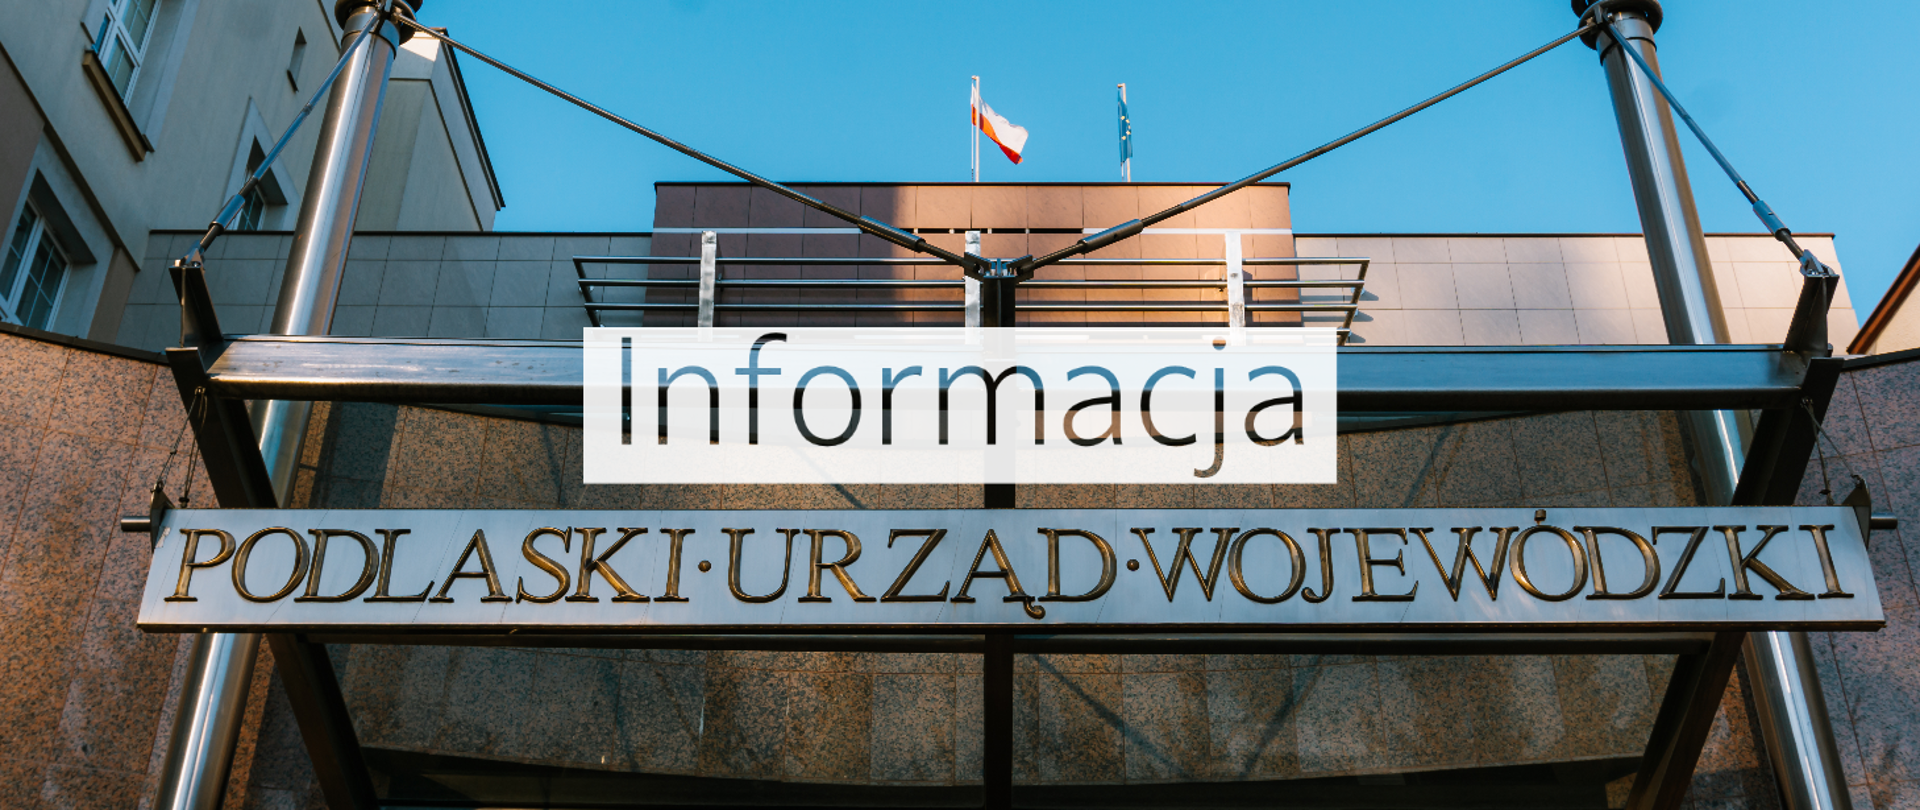 Informacja Podlaskiego Urzędu Wojewódzkiego